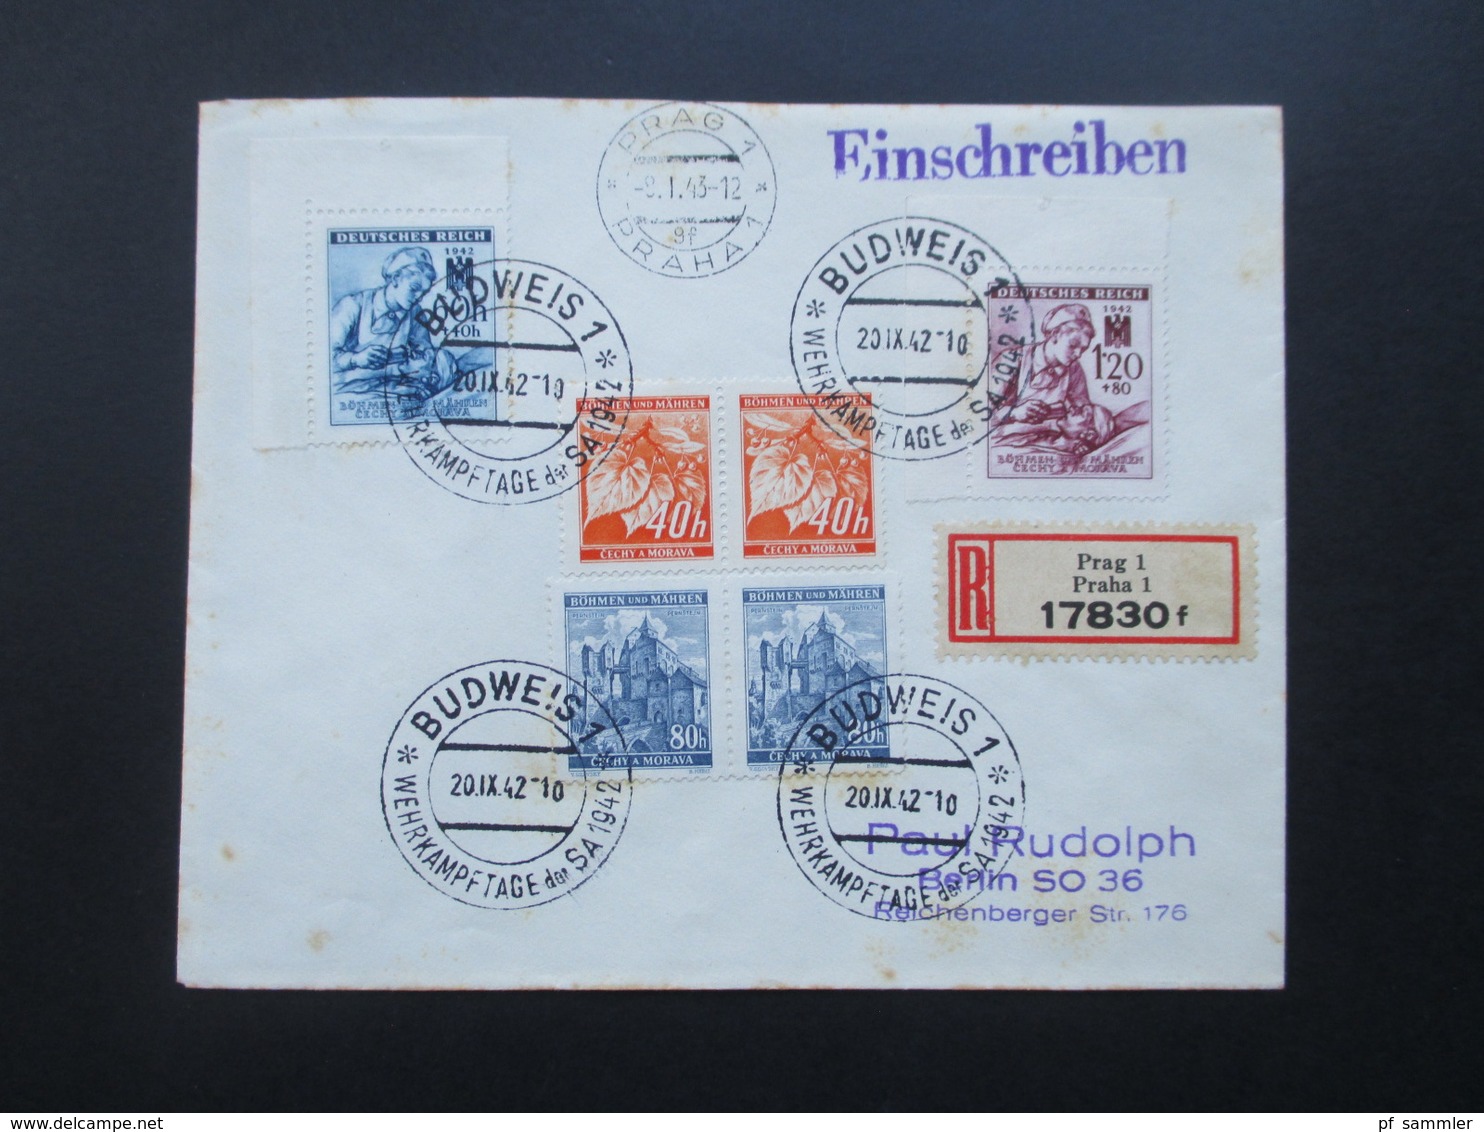 Böhmen Und Mähren 1942 / 43 SST / Sonderbeleg Ca. 3 Monate Später Echt Gelaufen Prag - Berlin! R-Brief Prag 1 17830 F - Brieven En Documenten